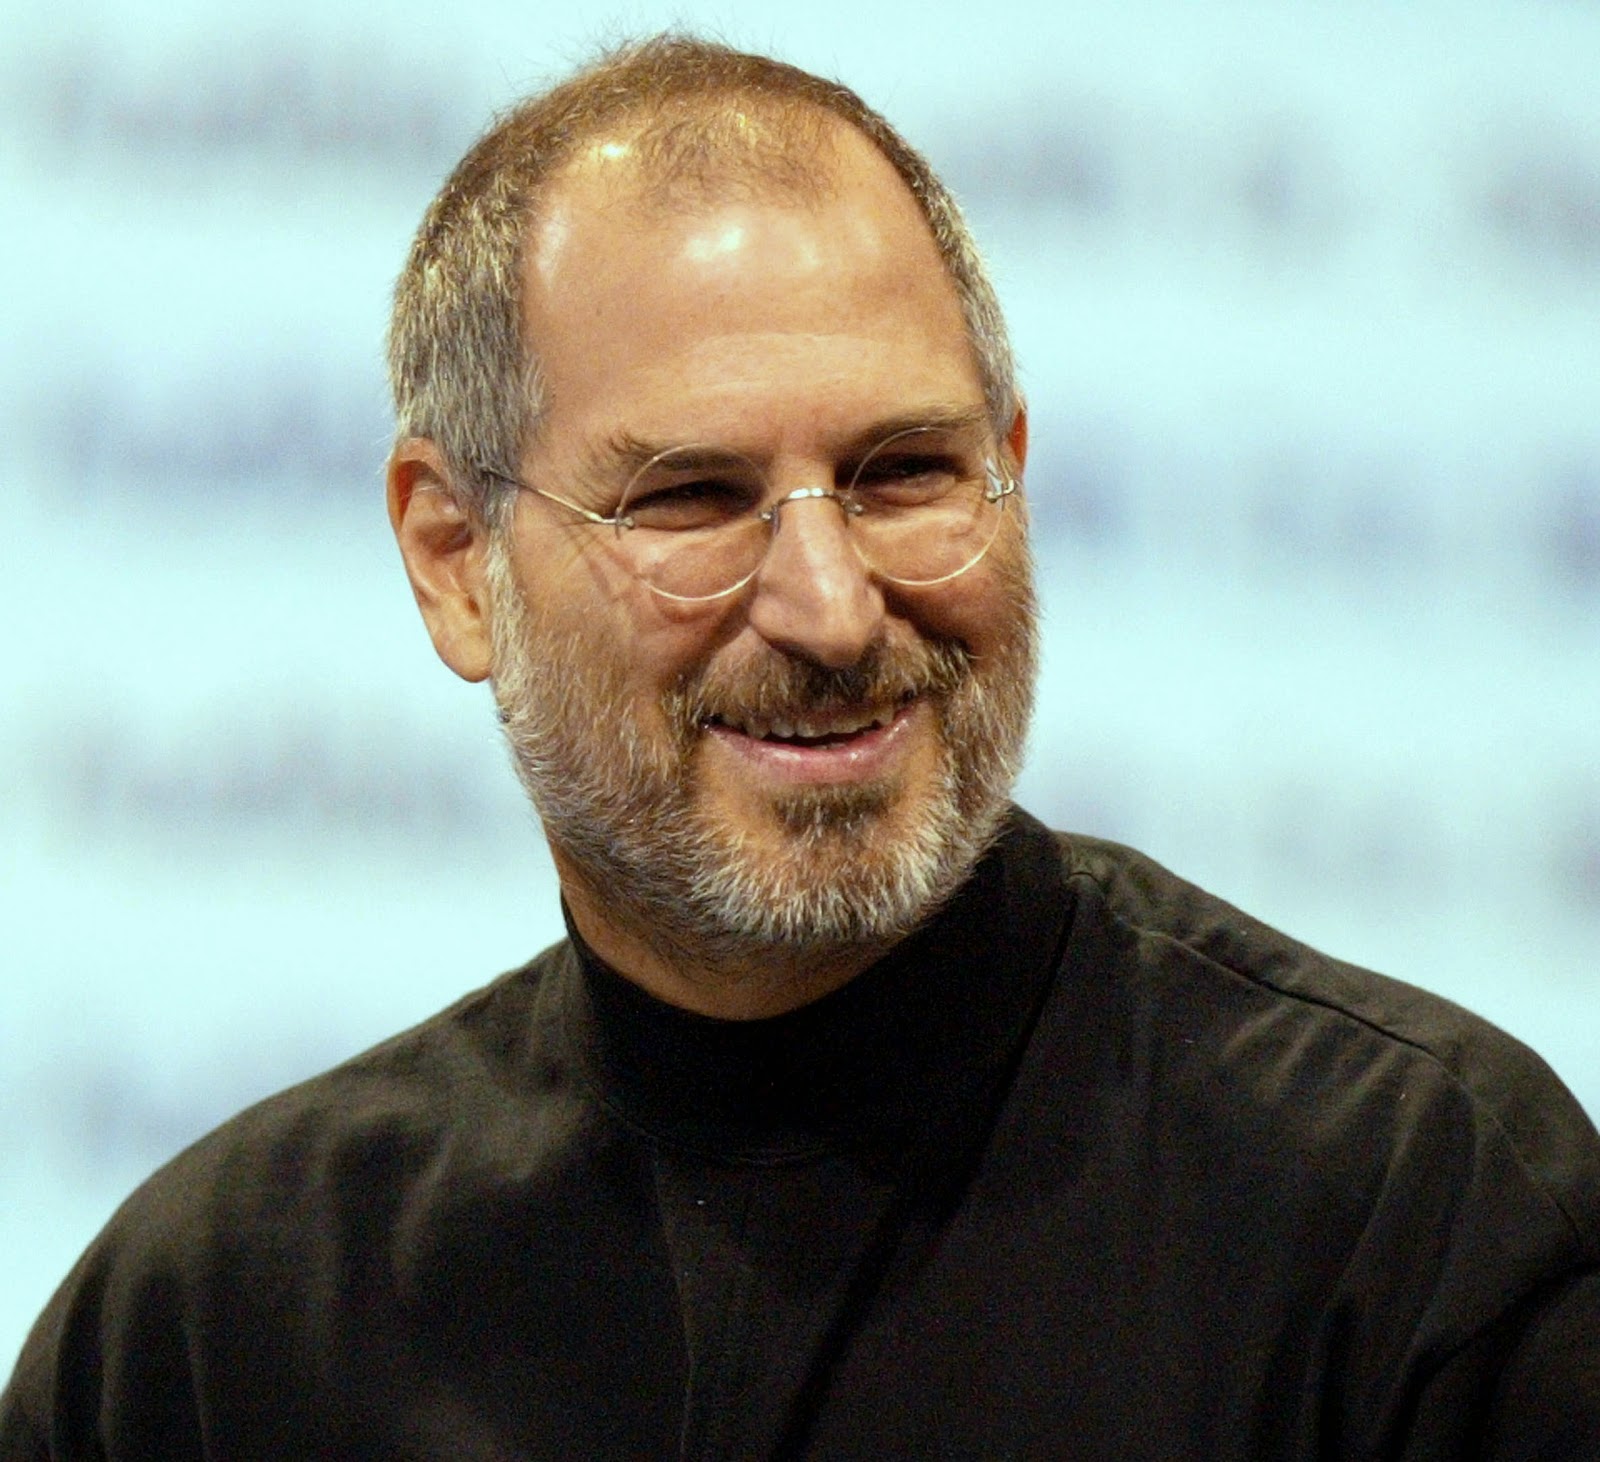 Những câu nói hay của Steve Paul Jobs